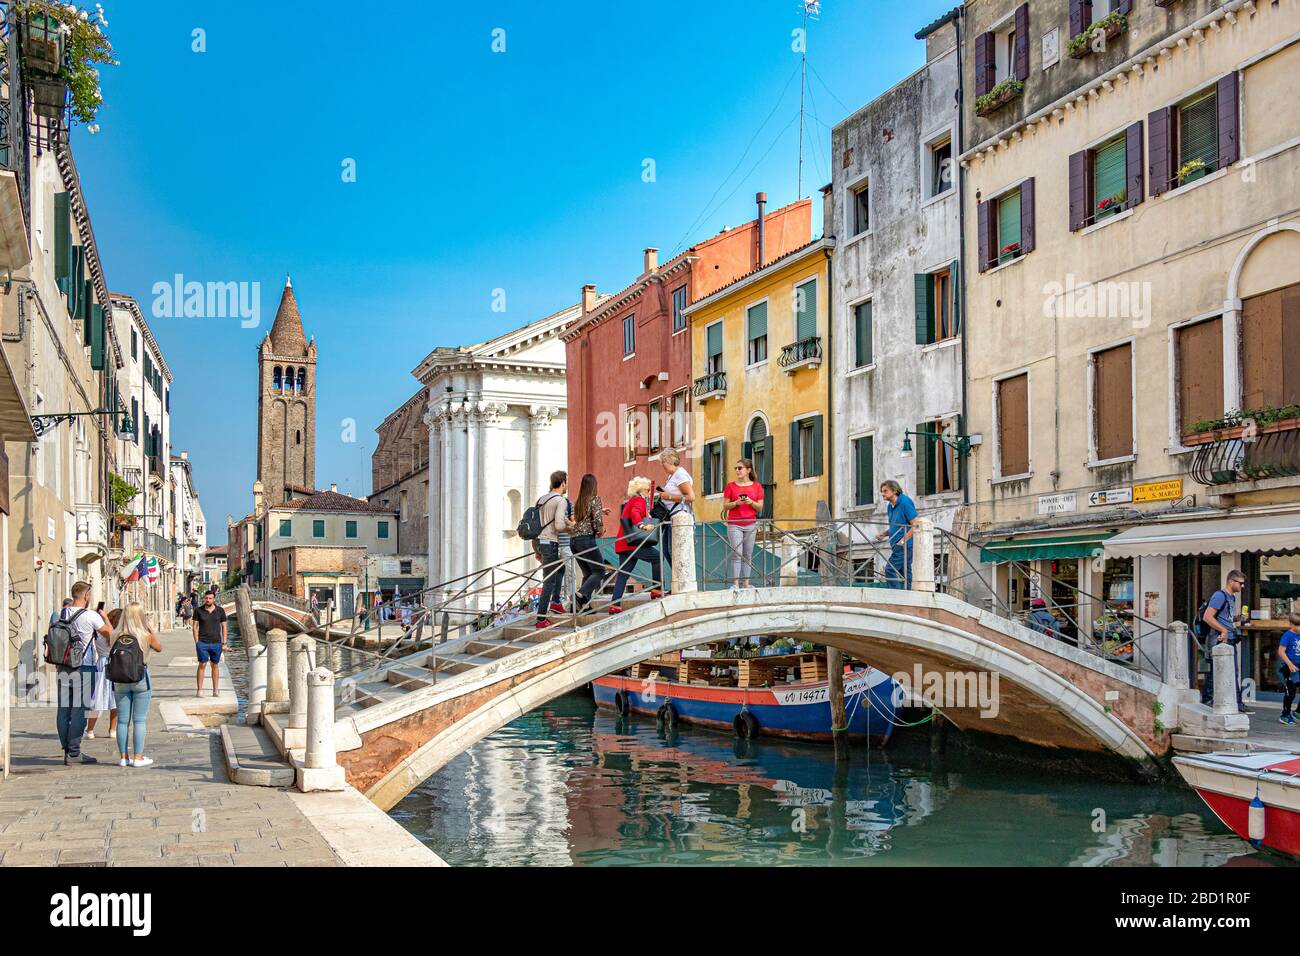 Ponte dei Pugni près de Campo San Barnaba un pont de canal au-dessus du Rio San Barnaba connu pour les combats de poing anciens, Venise, Italie Banque D'Images